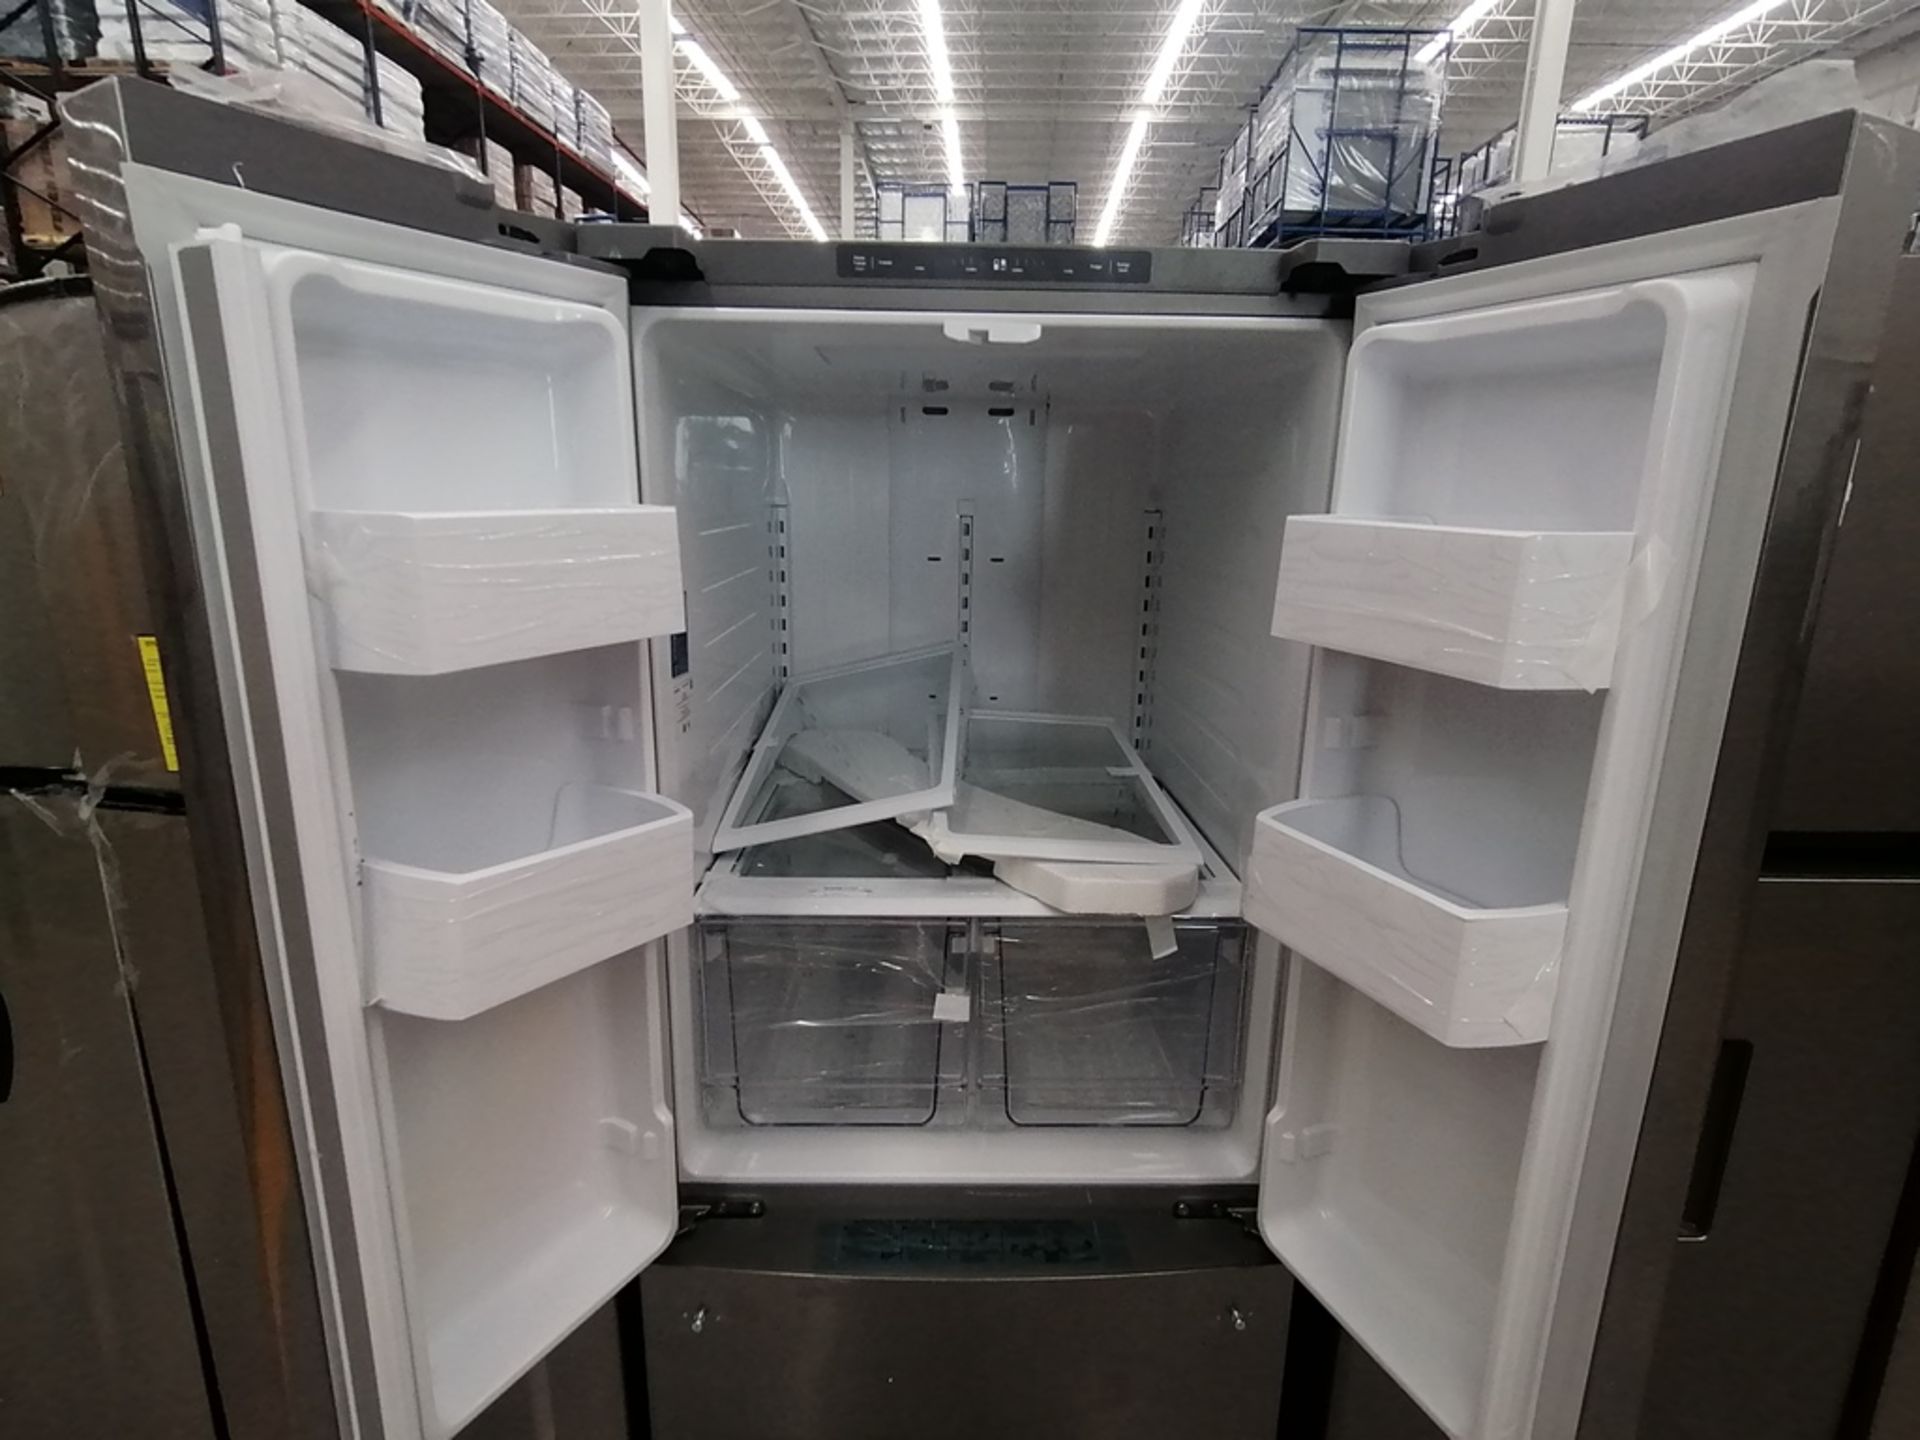 Lote de 2 Refrigeradores contiene: 1 Refrigerador con dispensador de agua, Marca Winia, Modelo DFR- - Image 12 of 15